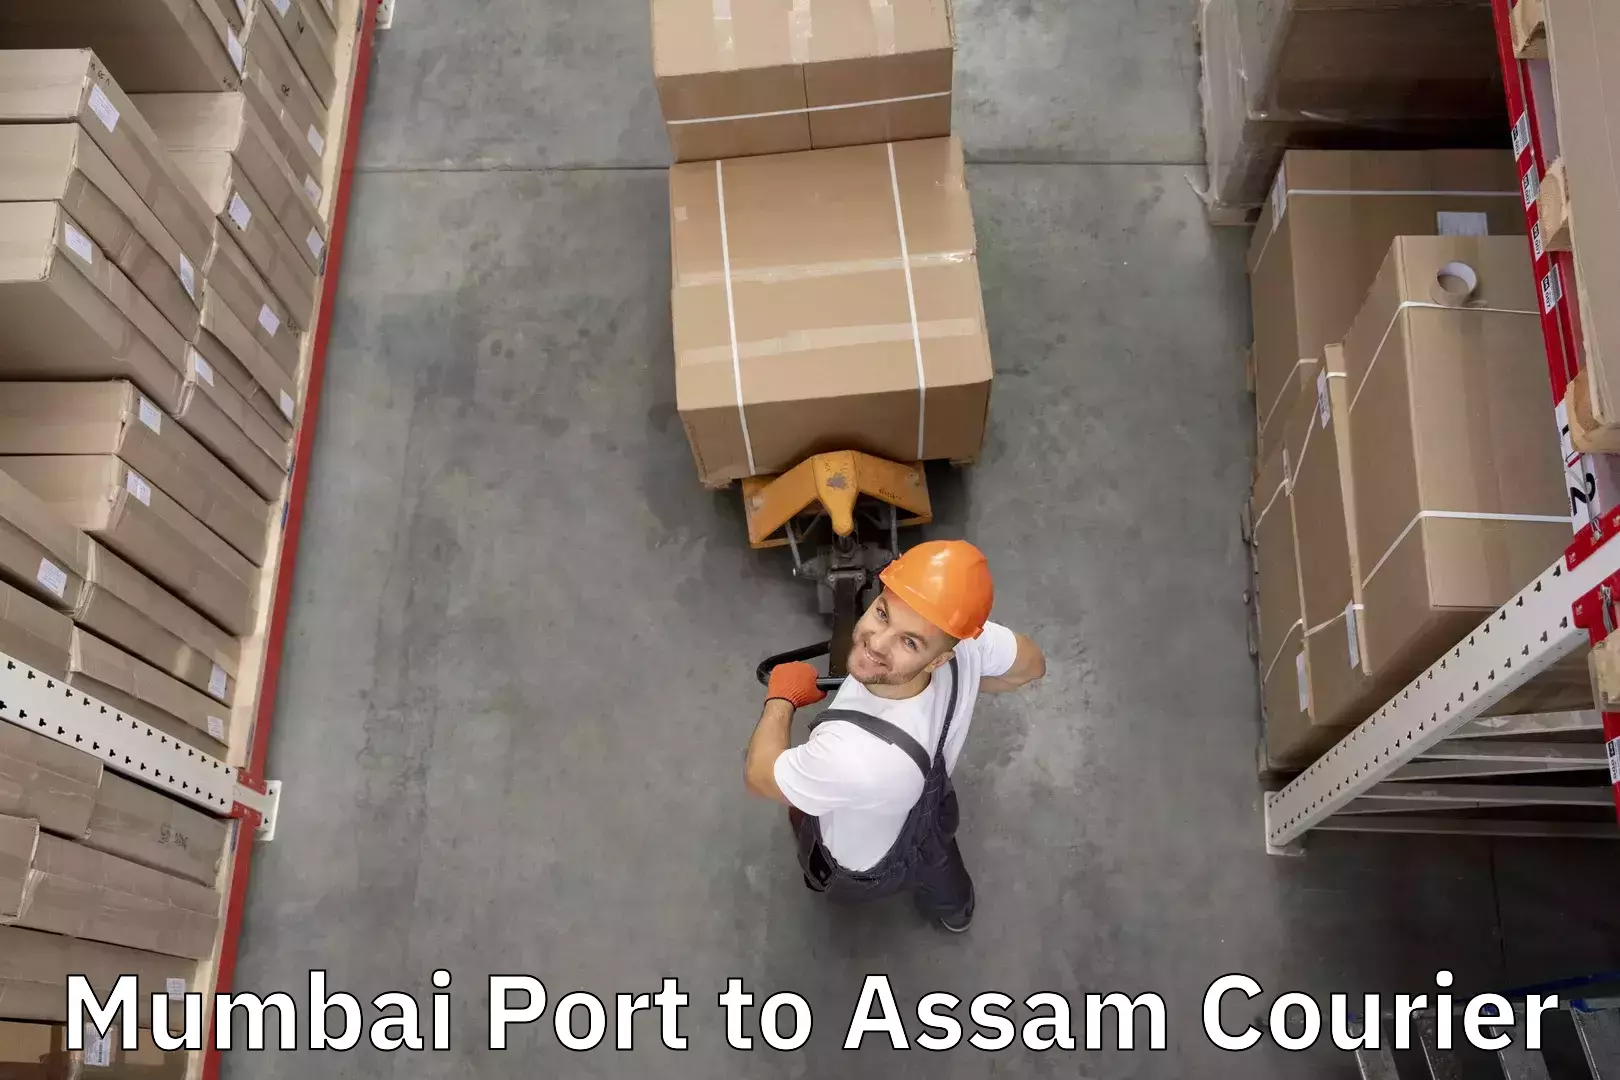 Door-to-door baggage service Mumbai Port to Marigaon